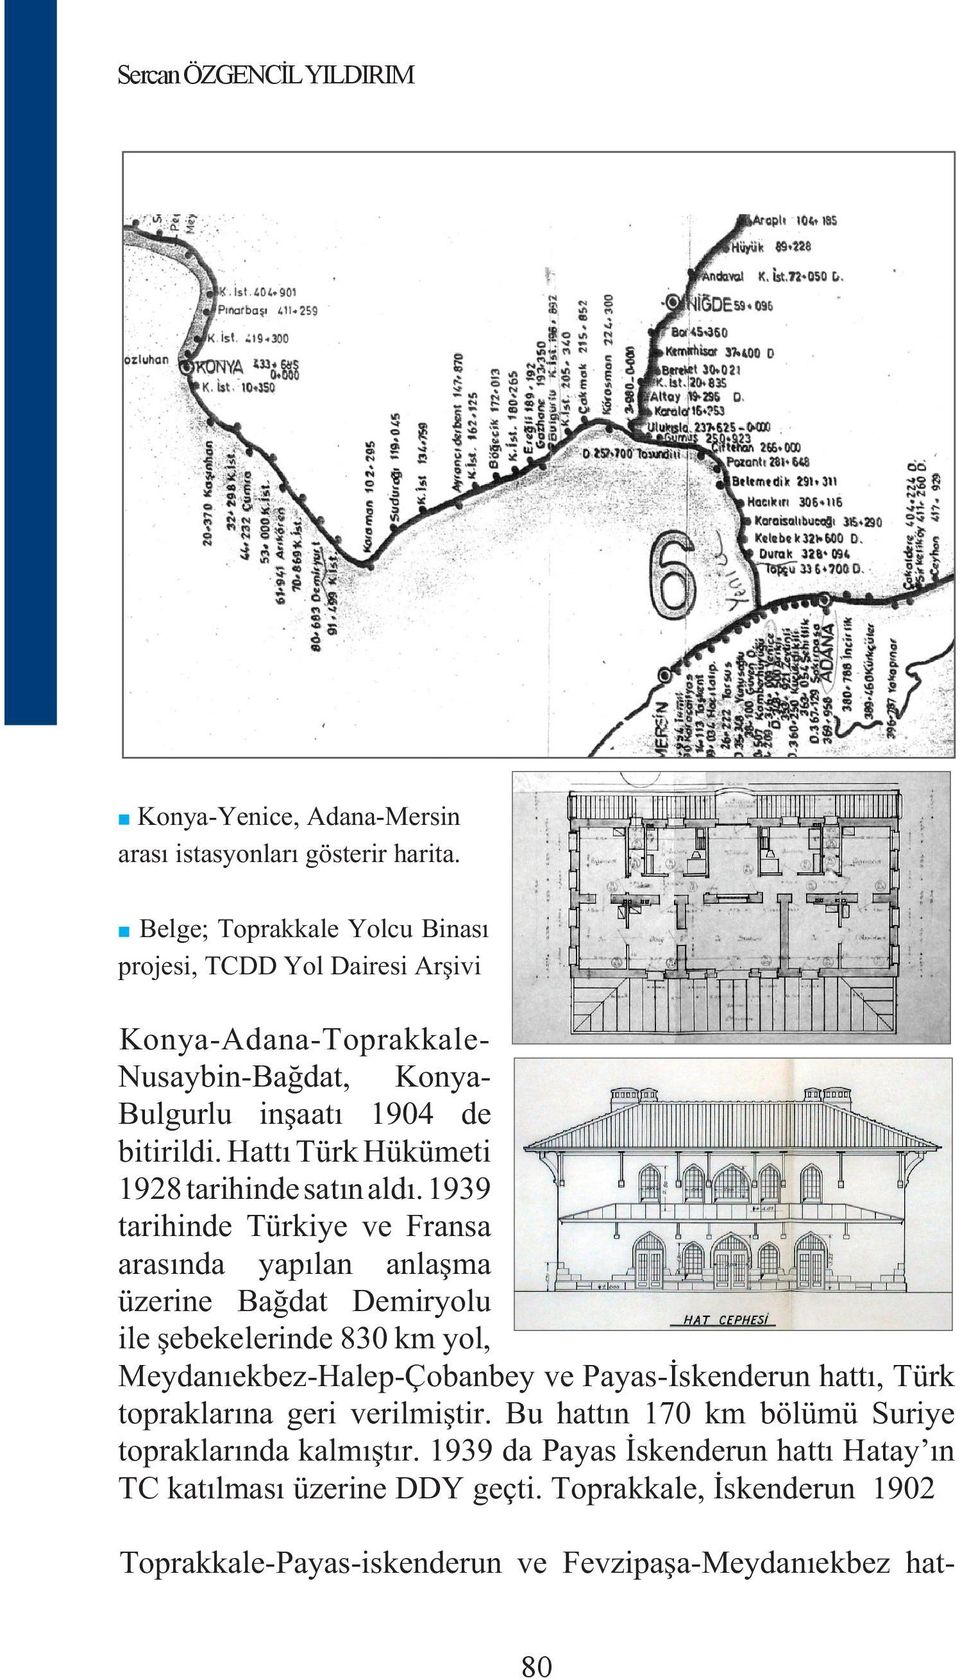 Hattı Türk Hükümeti 1928 tarihinde satın aldı.